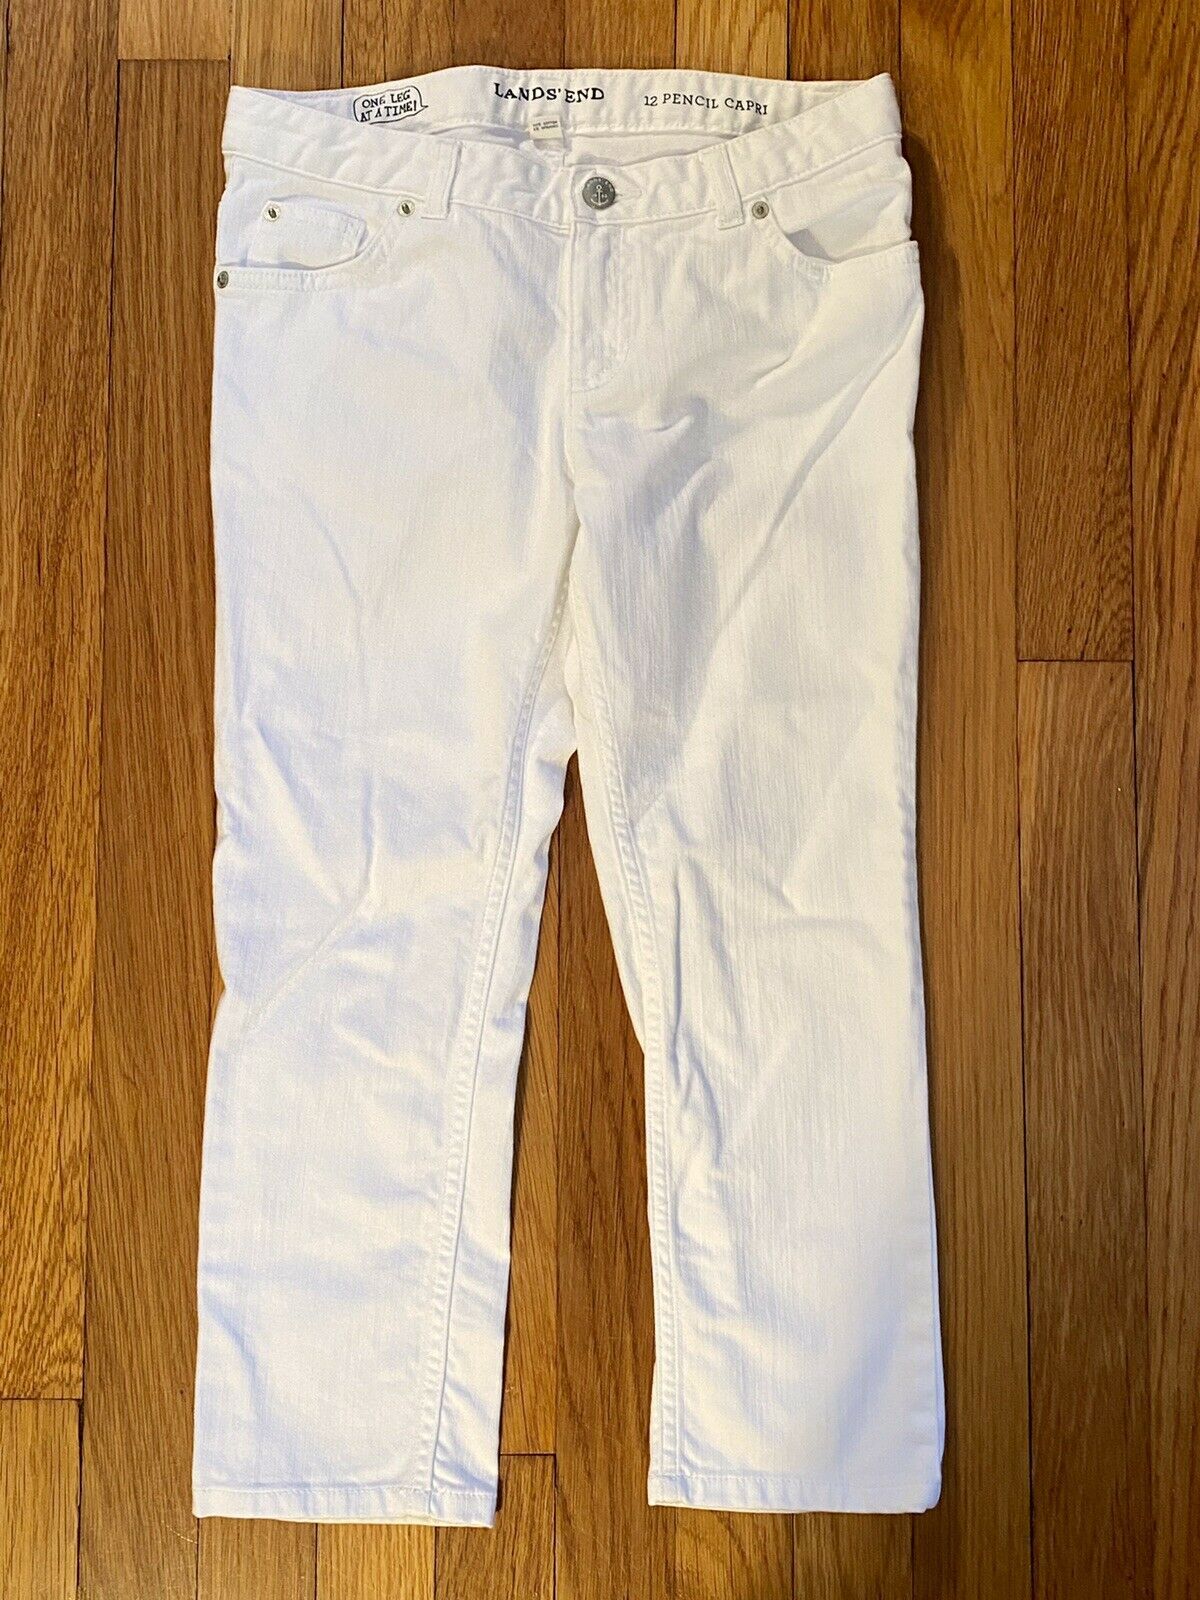 Lands End Girls 12 Pencil Capri White Jeans (cotton/spandex) Excellent!